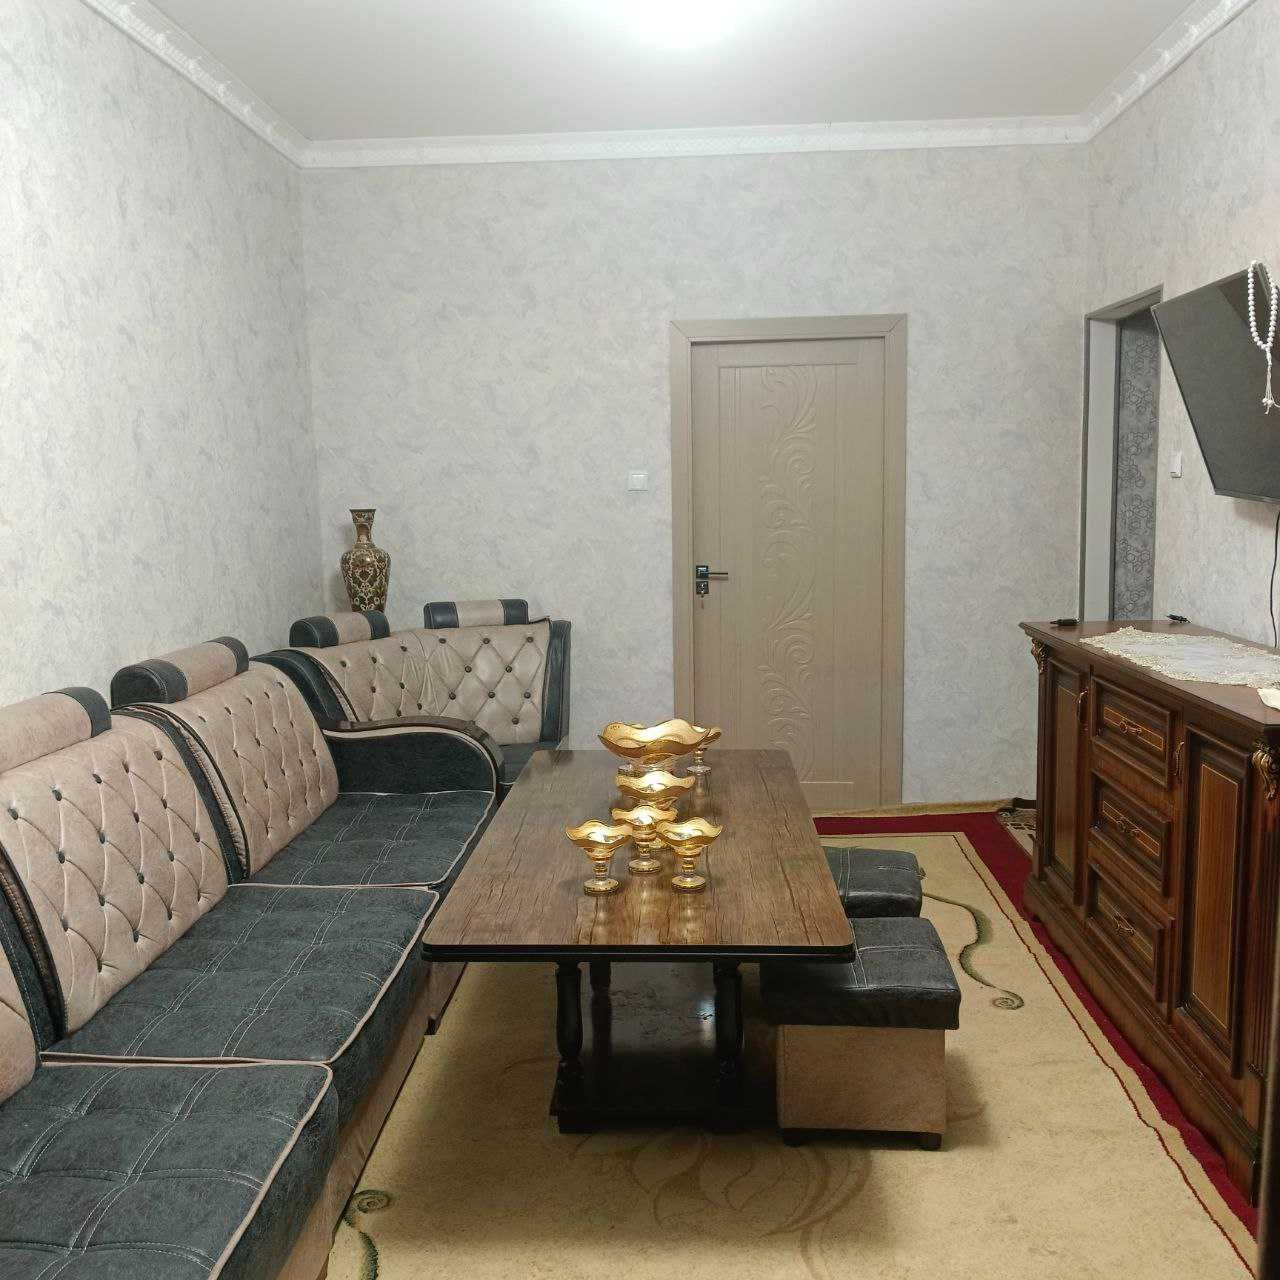 Срочно продаётся с мебелью 2х комнатная на Лисунова 4 на 1ом этаже